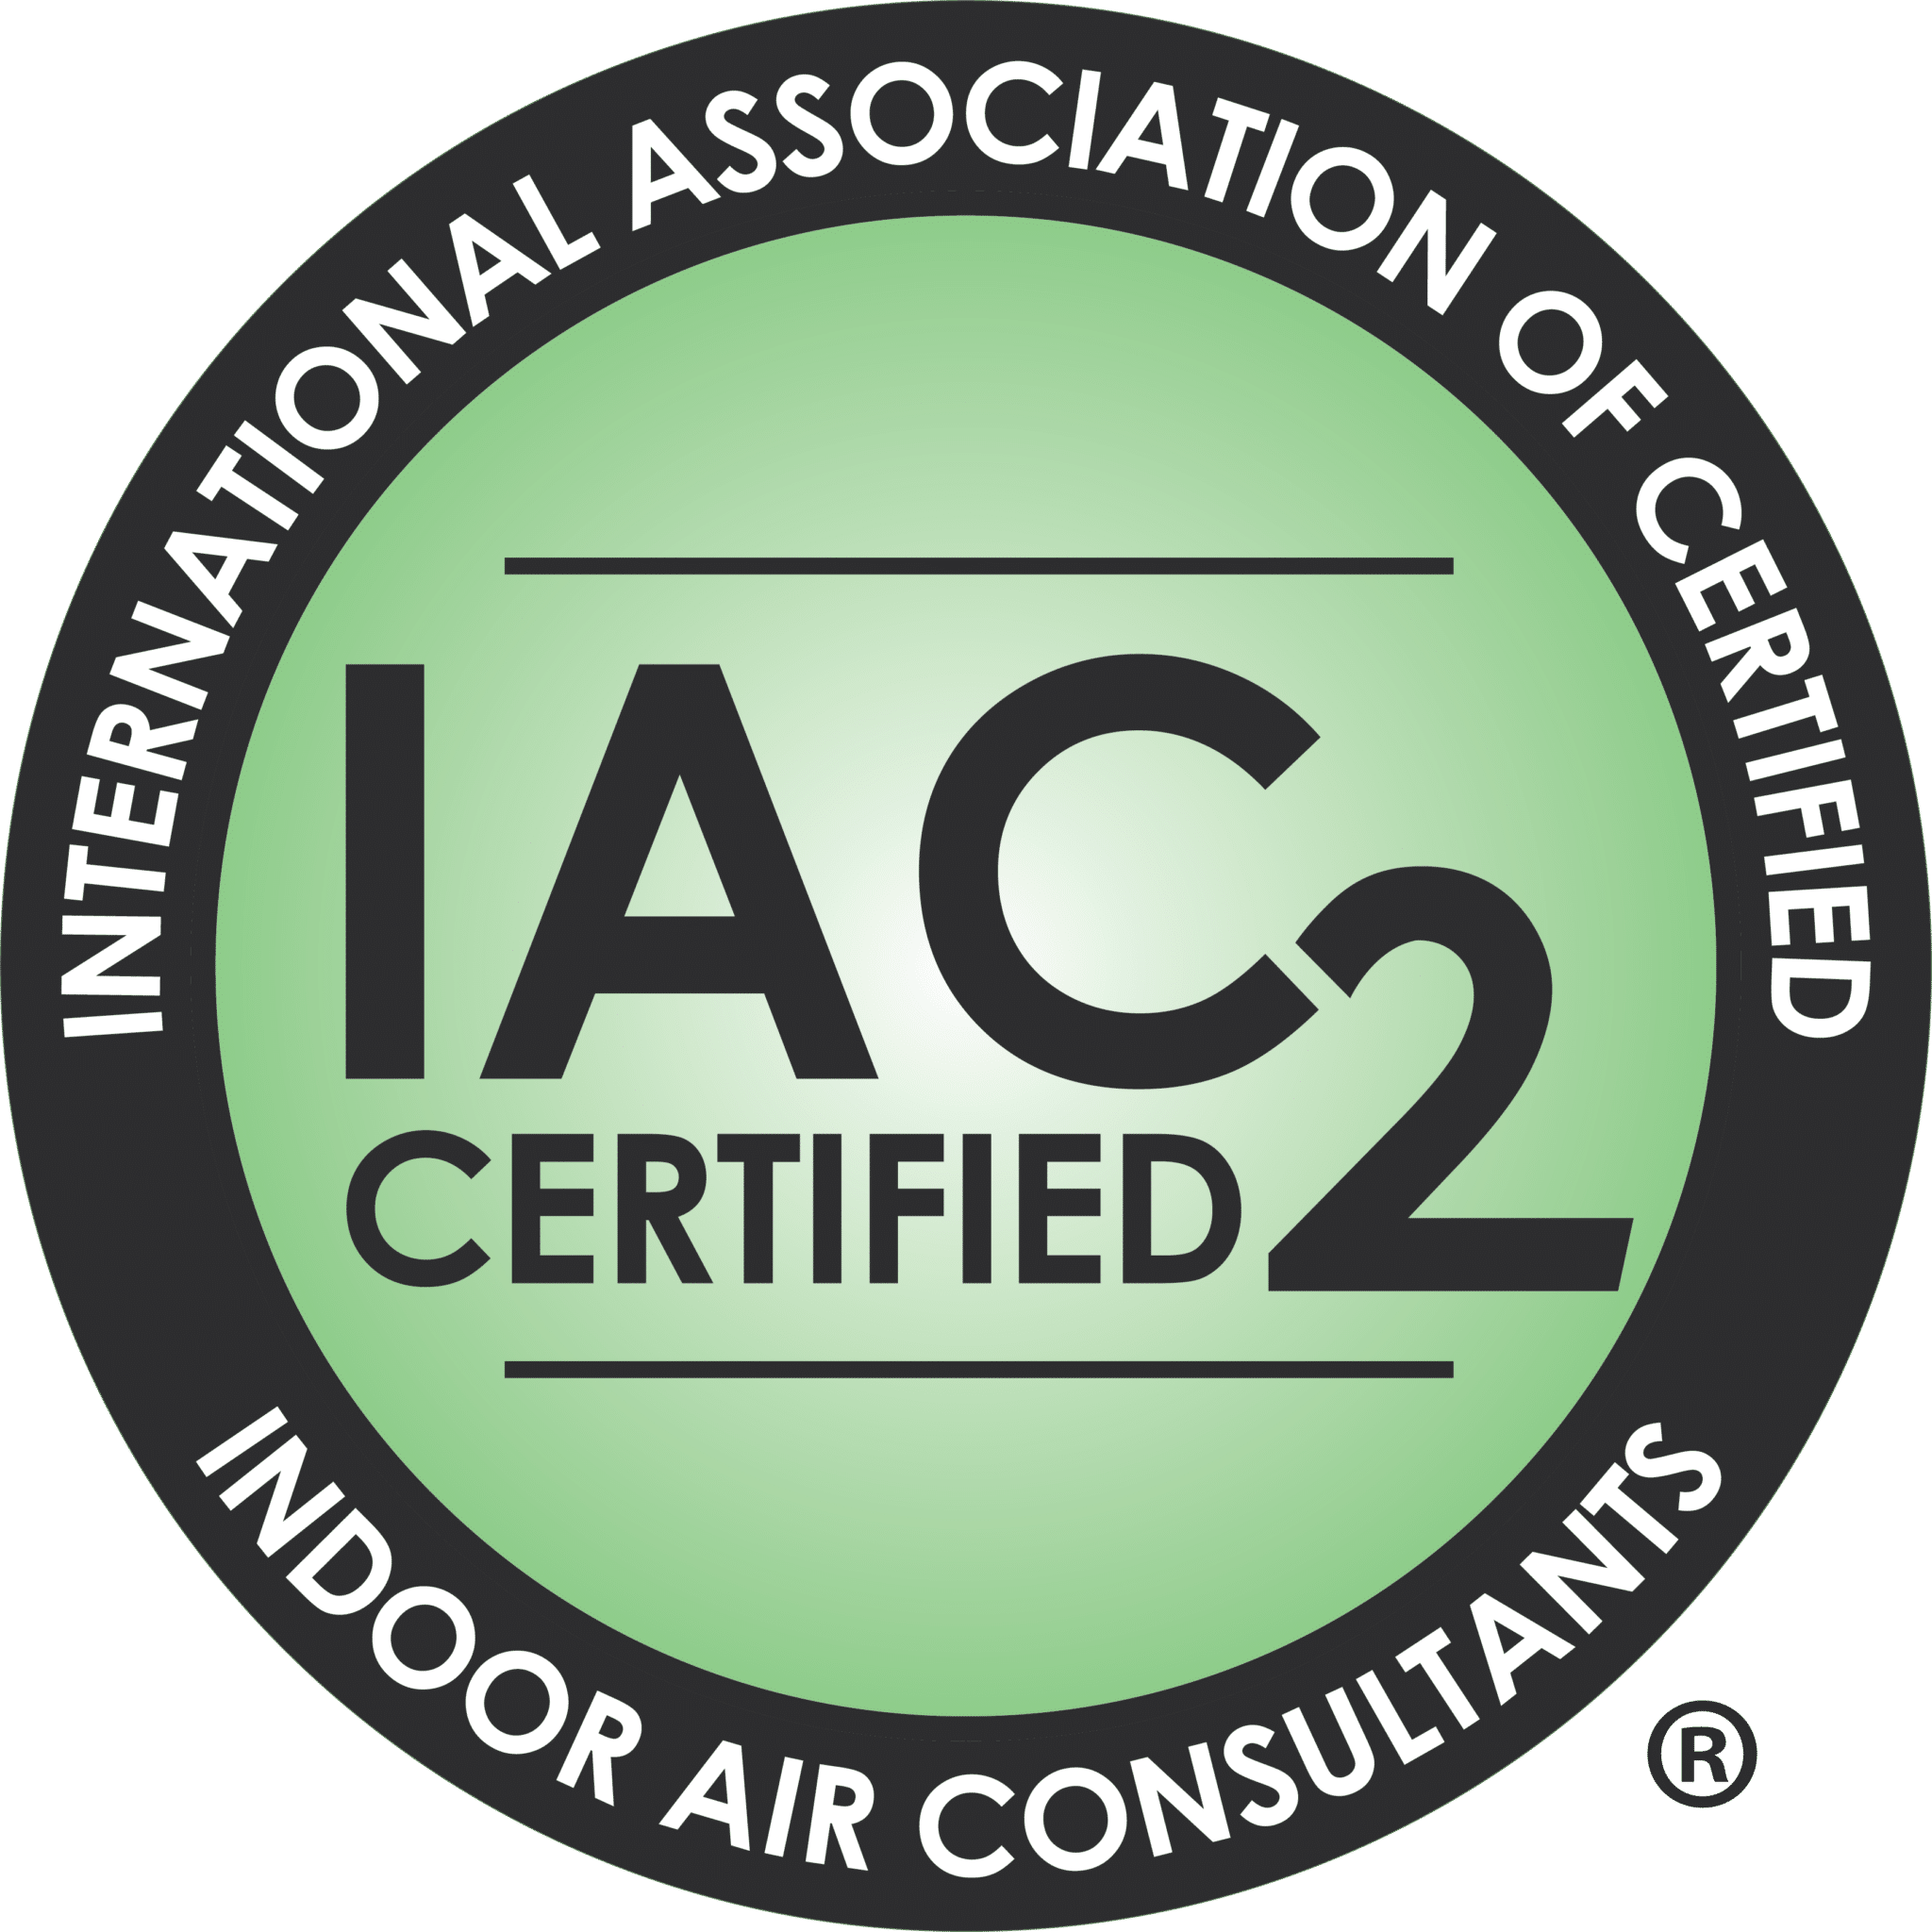 IAC Certified